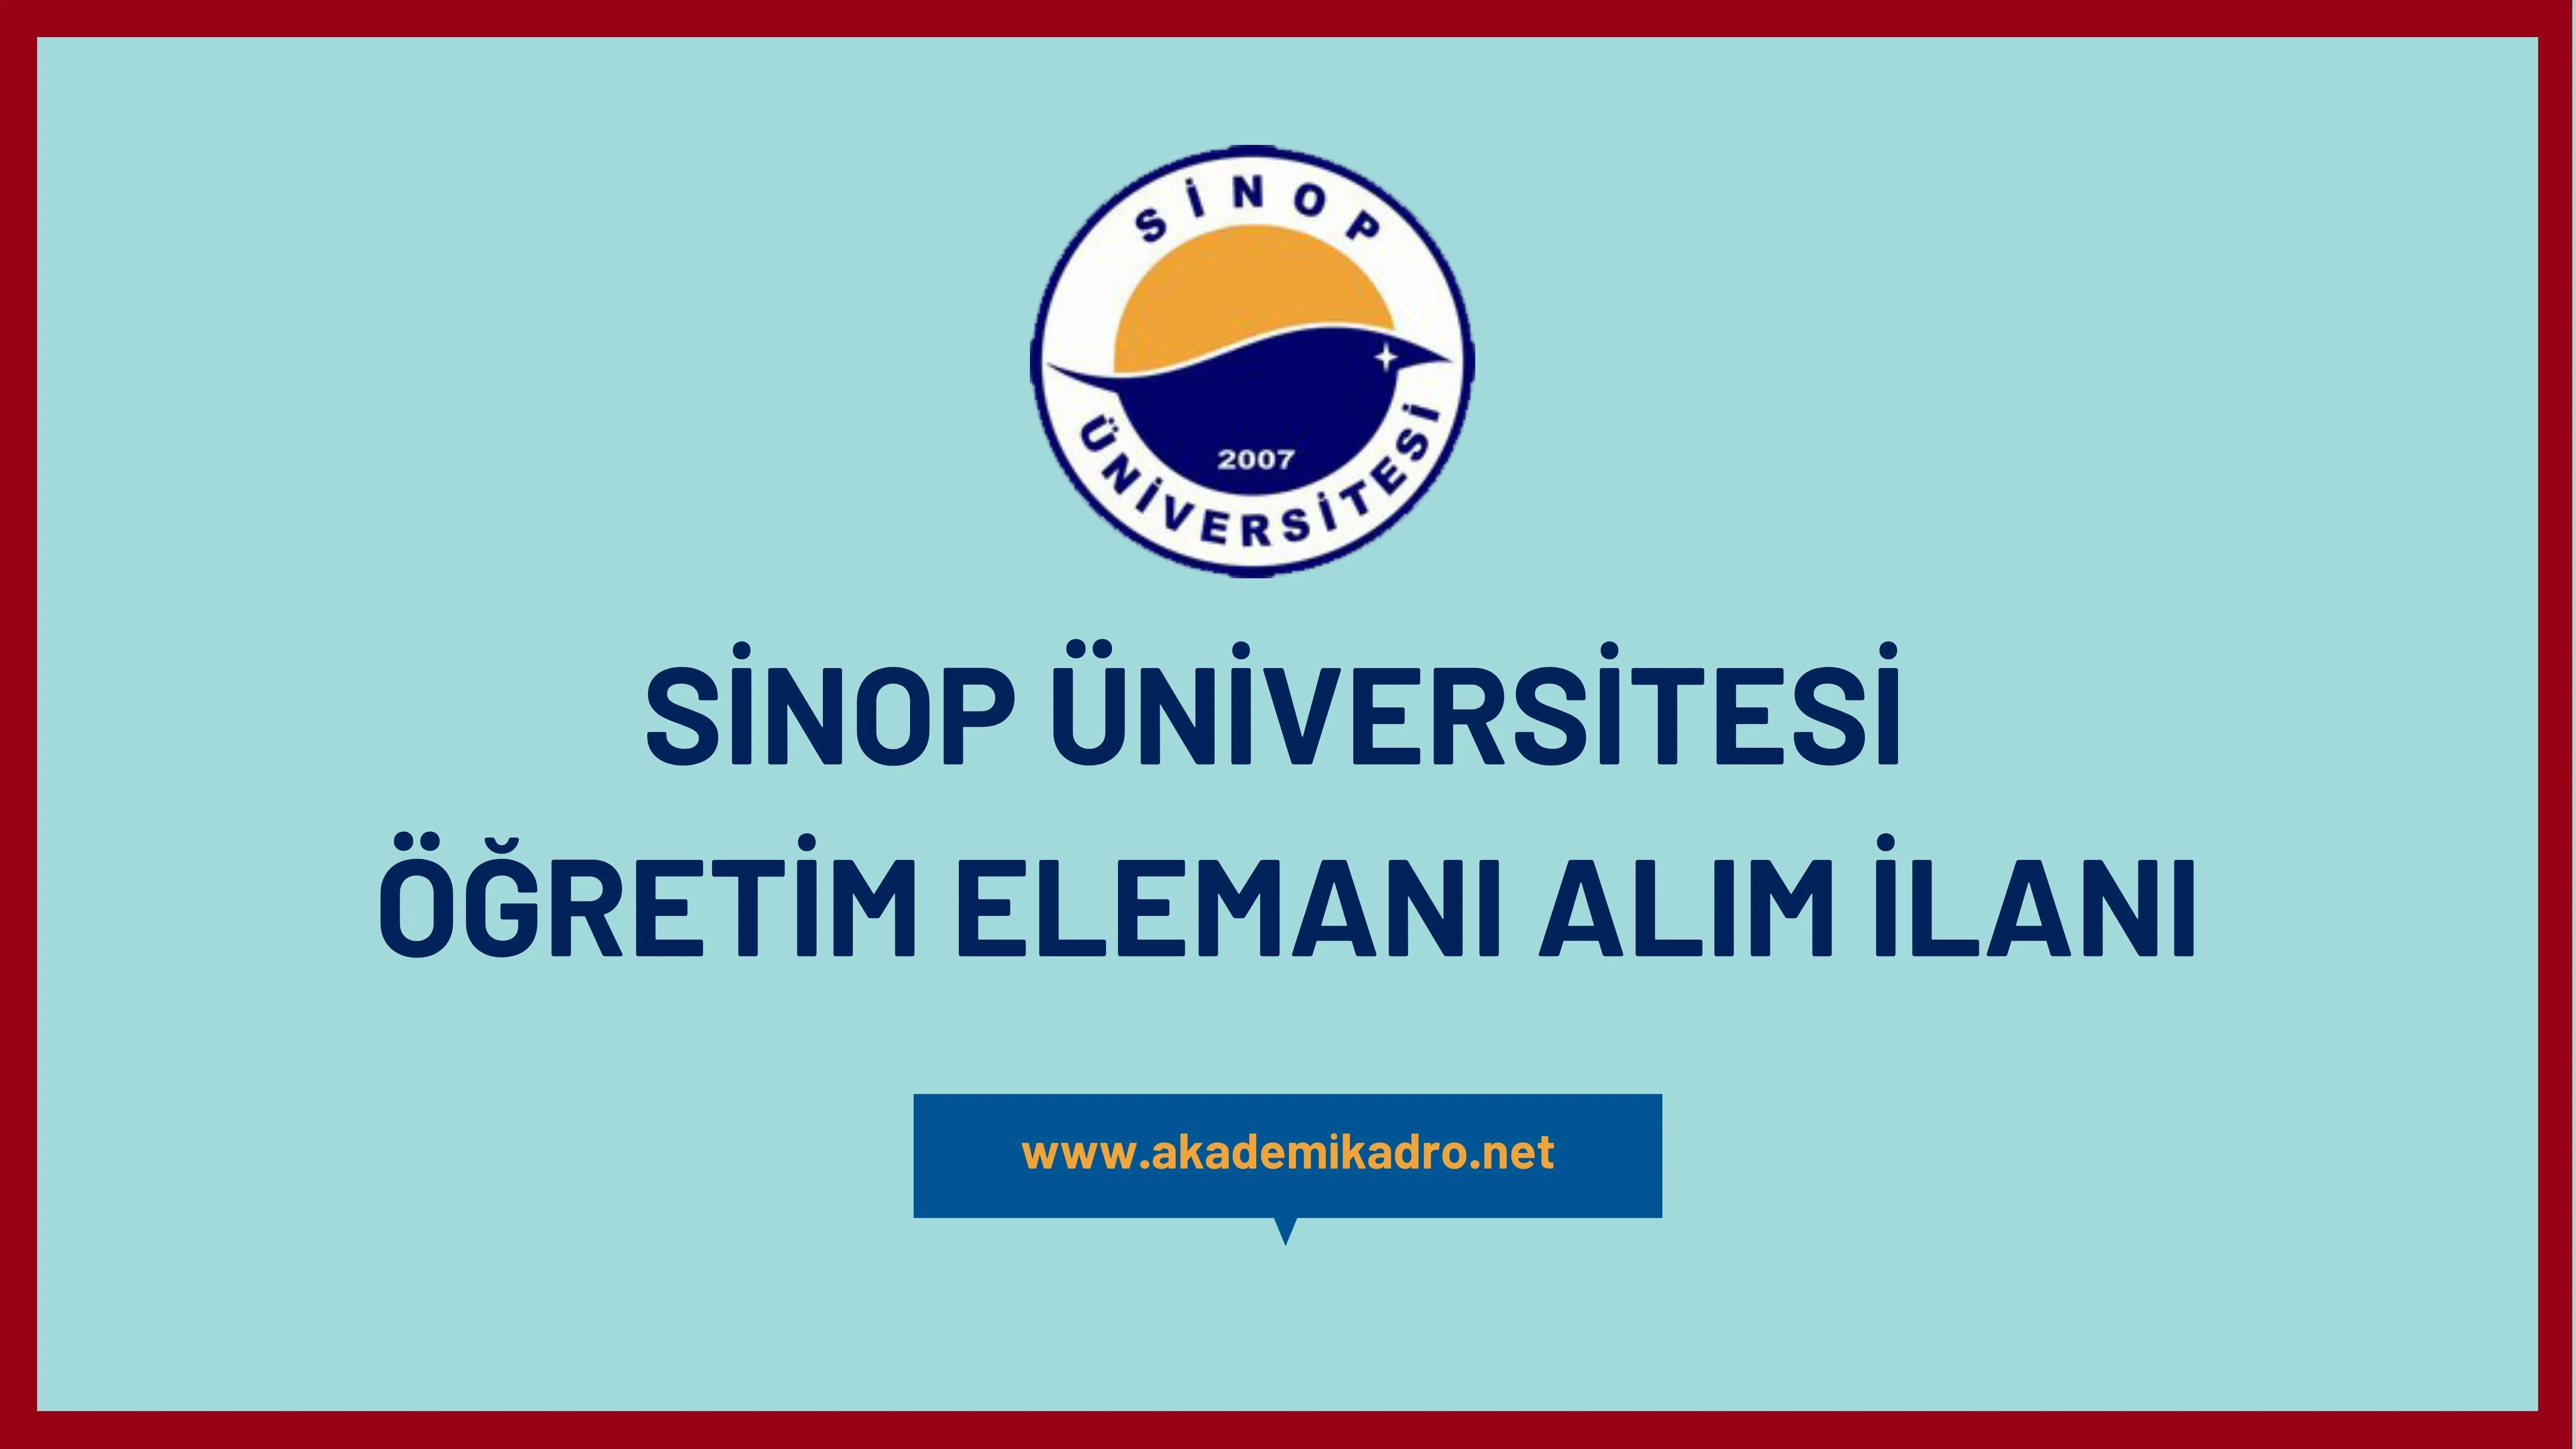 Sinop Üniversitesi 8 öğretim üyesi, 13 öğretim görevlisi ve 2 araştırma görevlisi alacaktır.